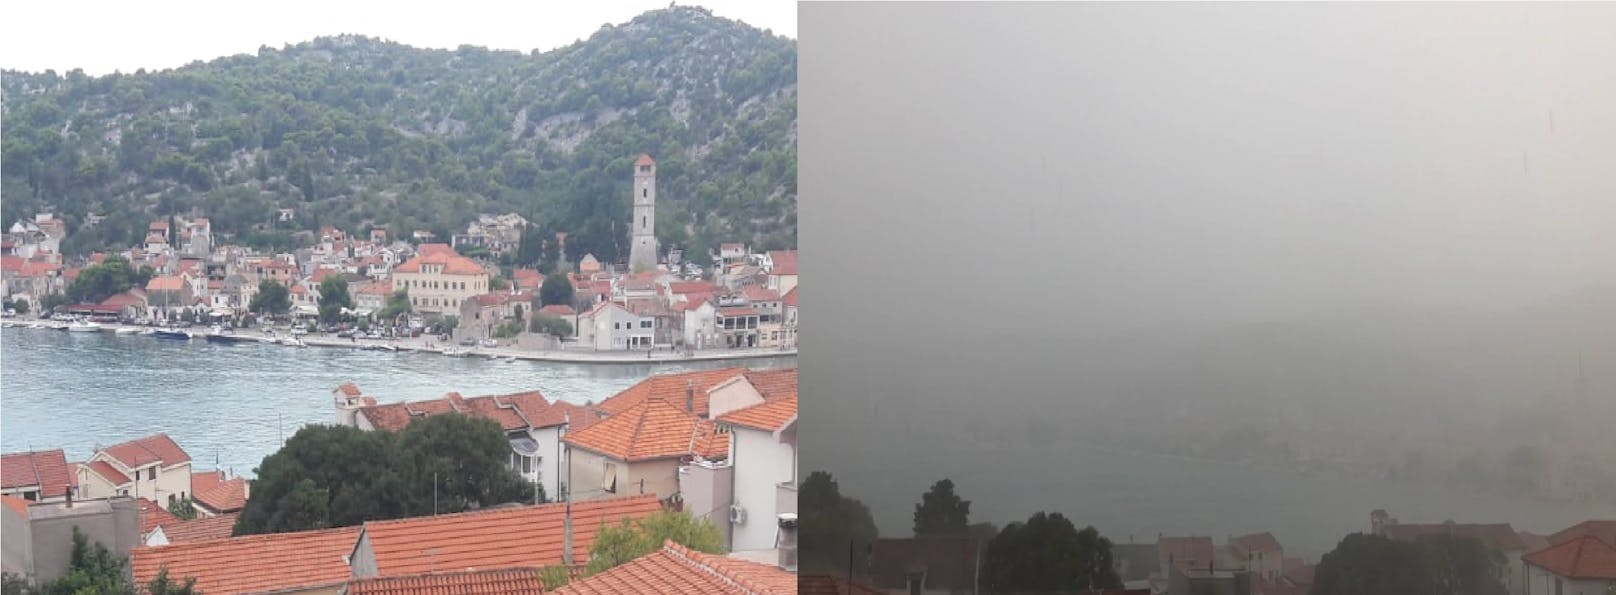 Unwetter in Tisno (Kroatien)